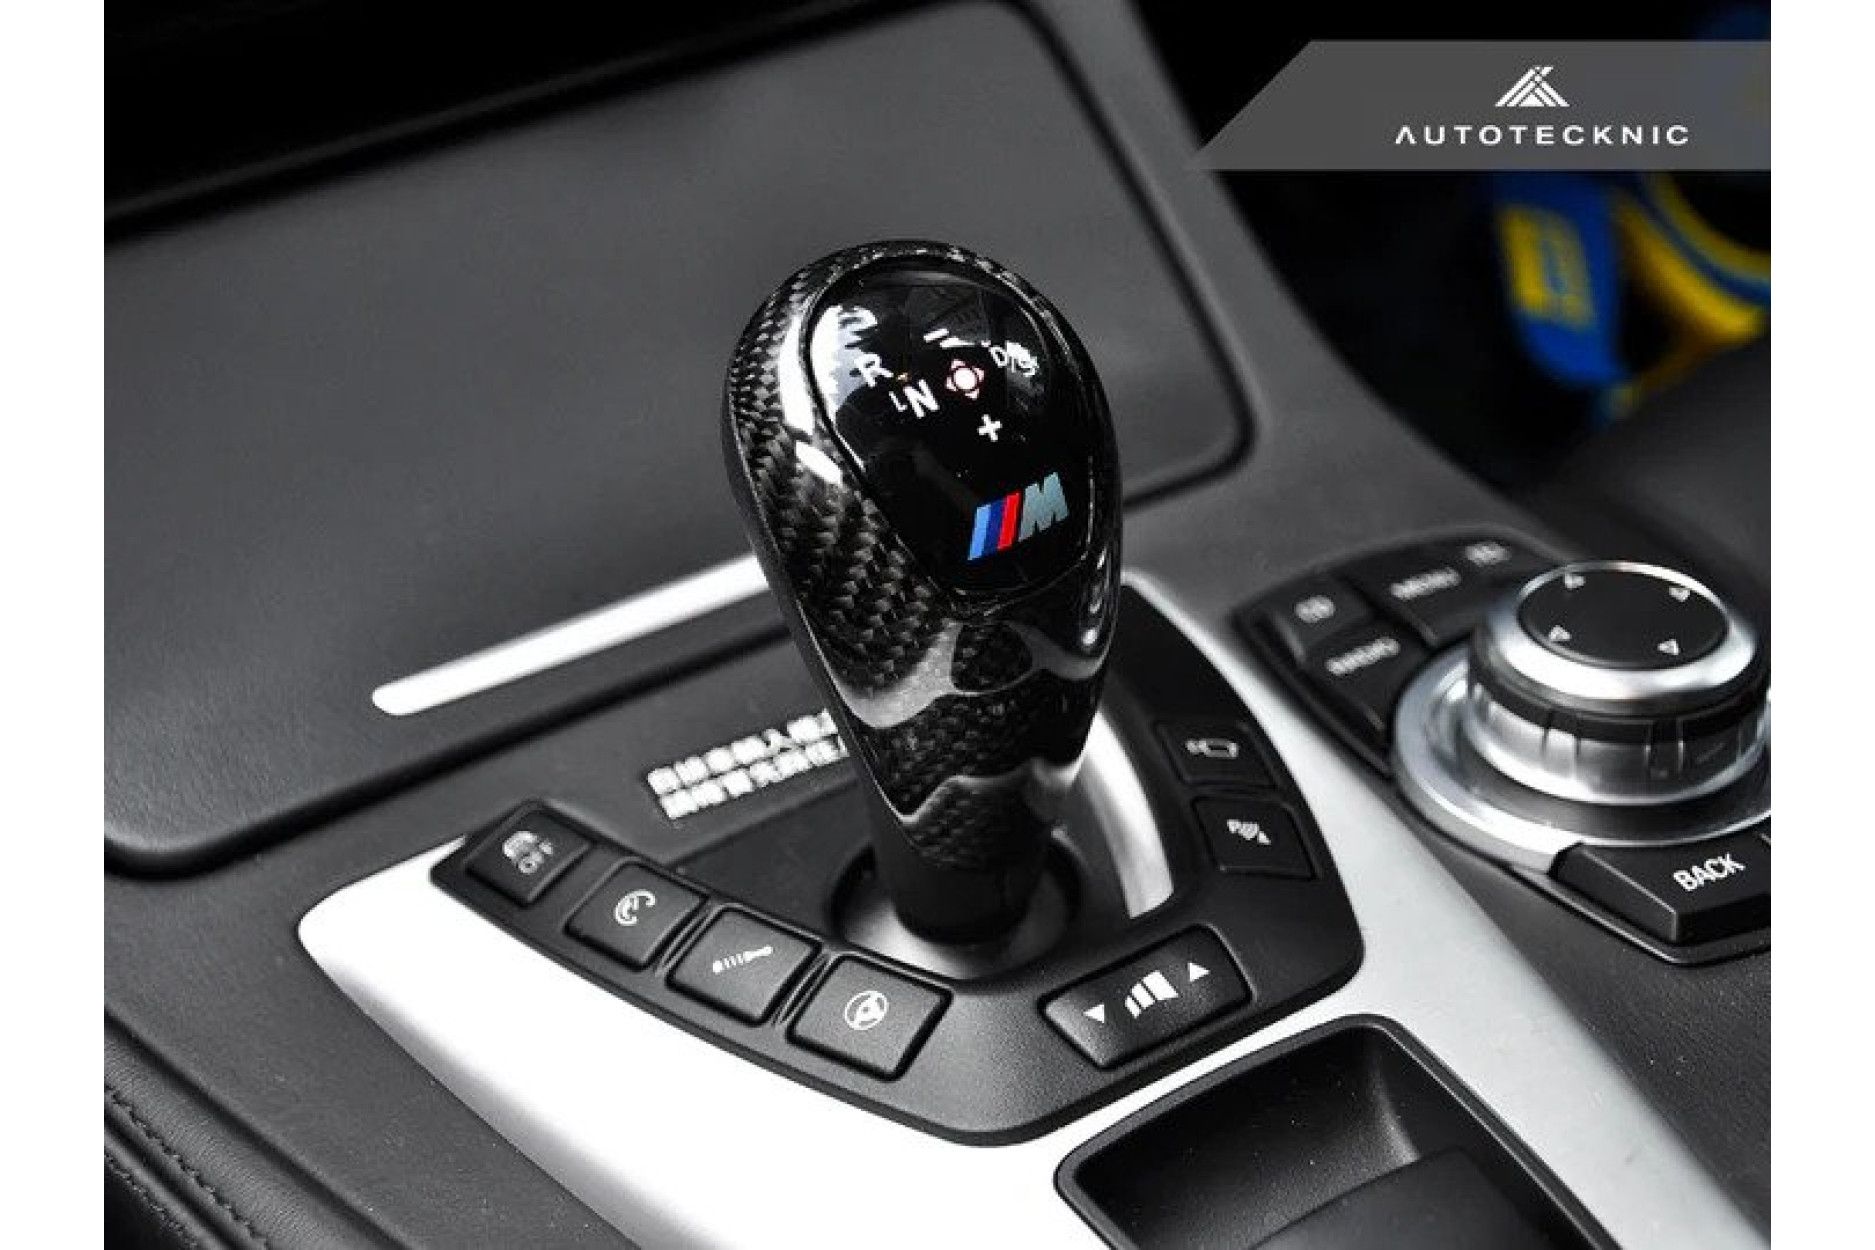 Autotecknic Carbon Schaltknauf Abdeckung für BMW F87 M2 und M2 Competition  - online kaufen bei CFD